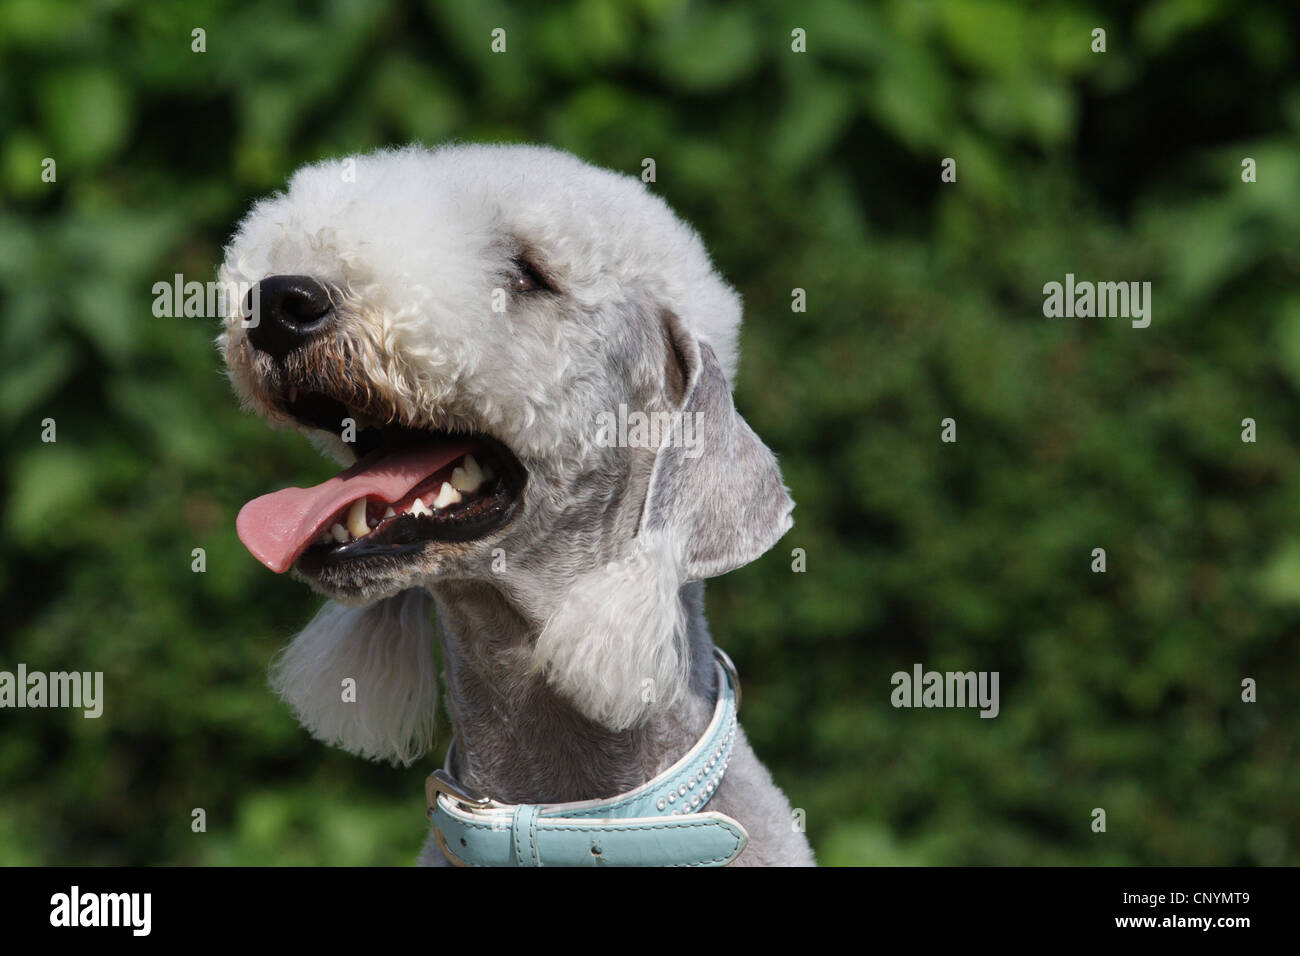 Bedlington Terrier (Canis lupus f. familiaris), portrait Stock Photo